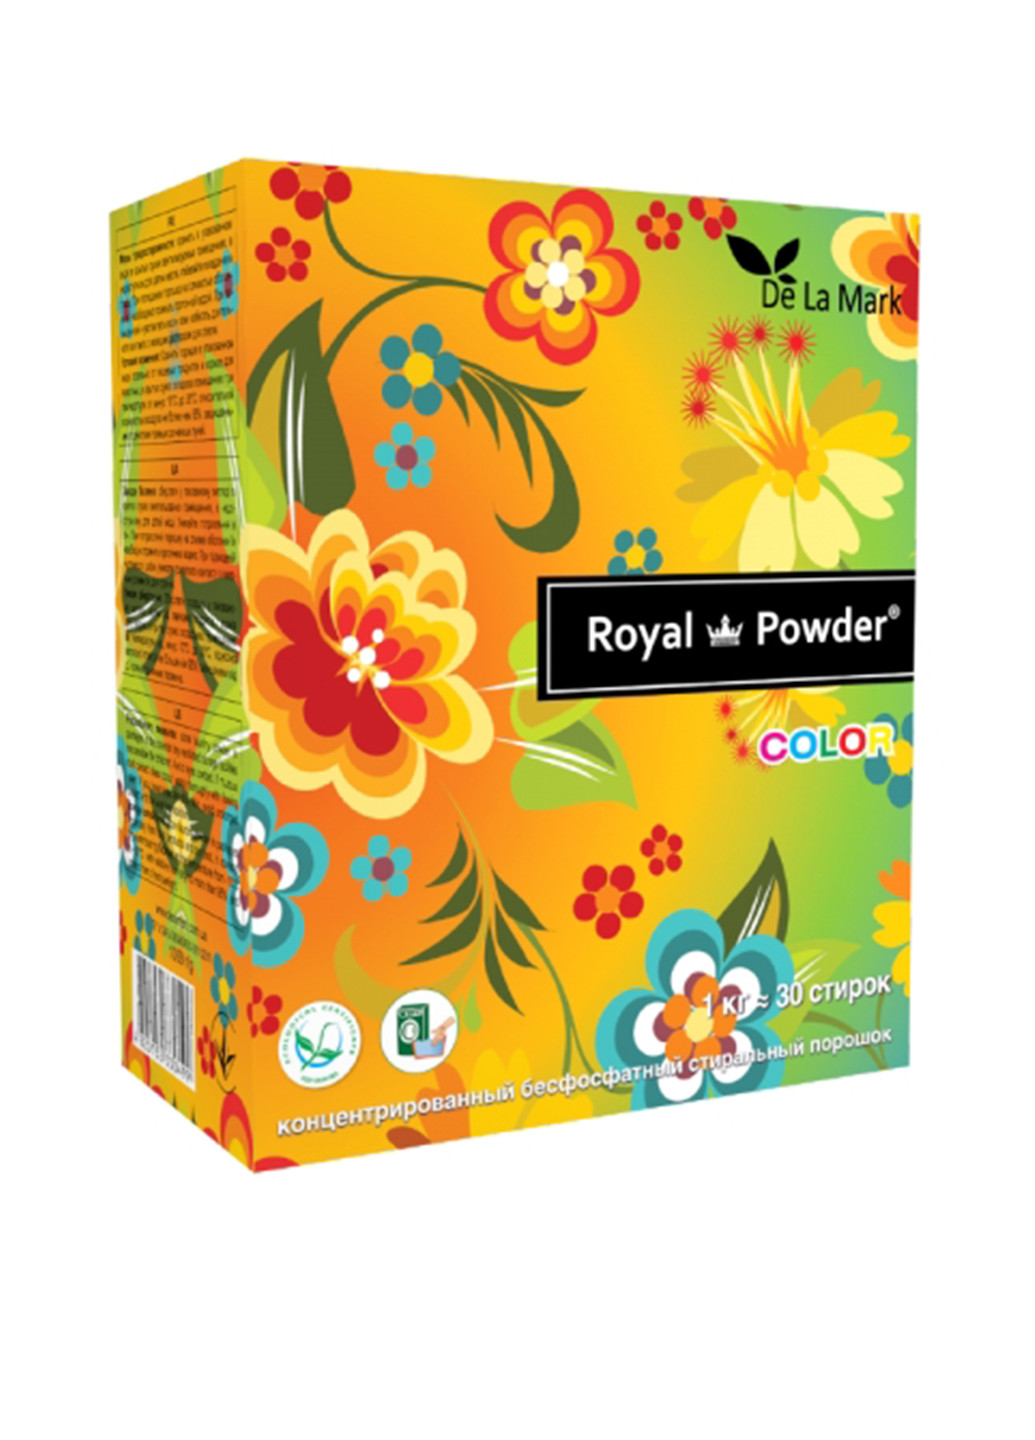 Порошок для цветных тканей Royal Powder Colour, 1 кг De La Mark (132543112)